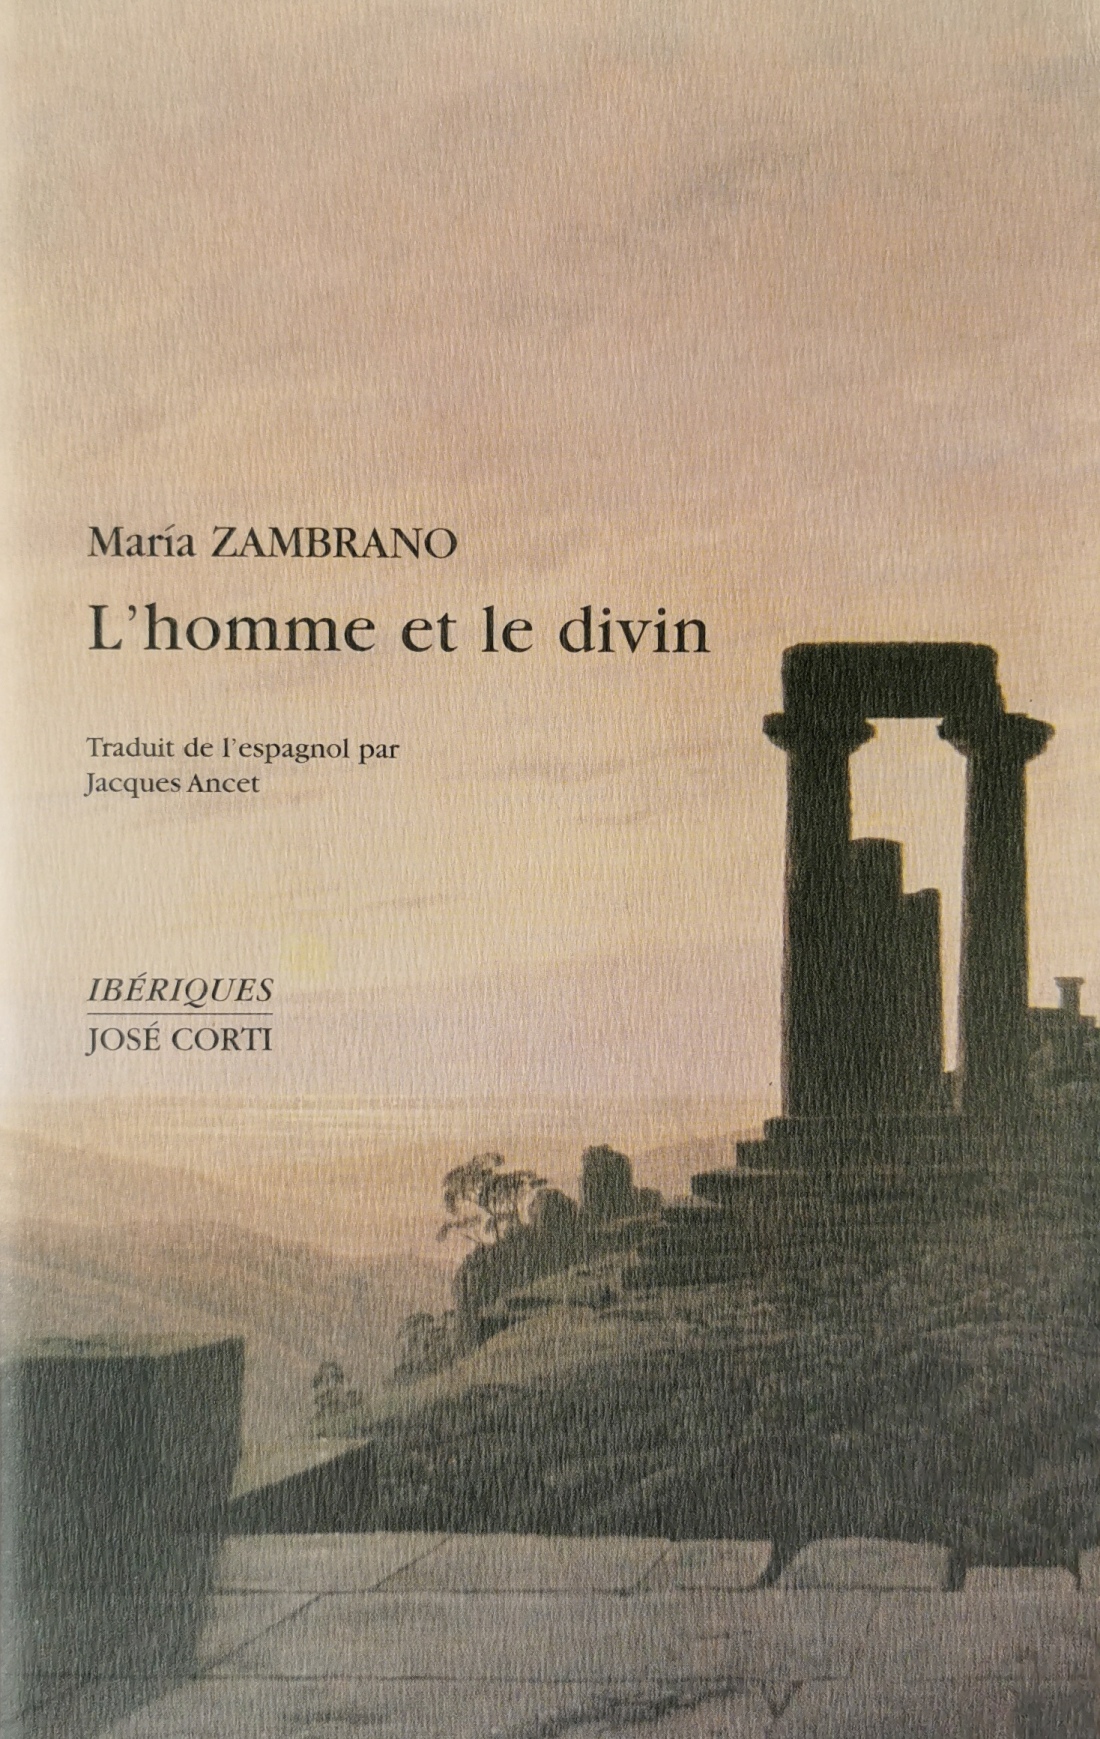 Maria Zambrano, L'homme et le divin